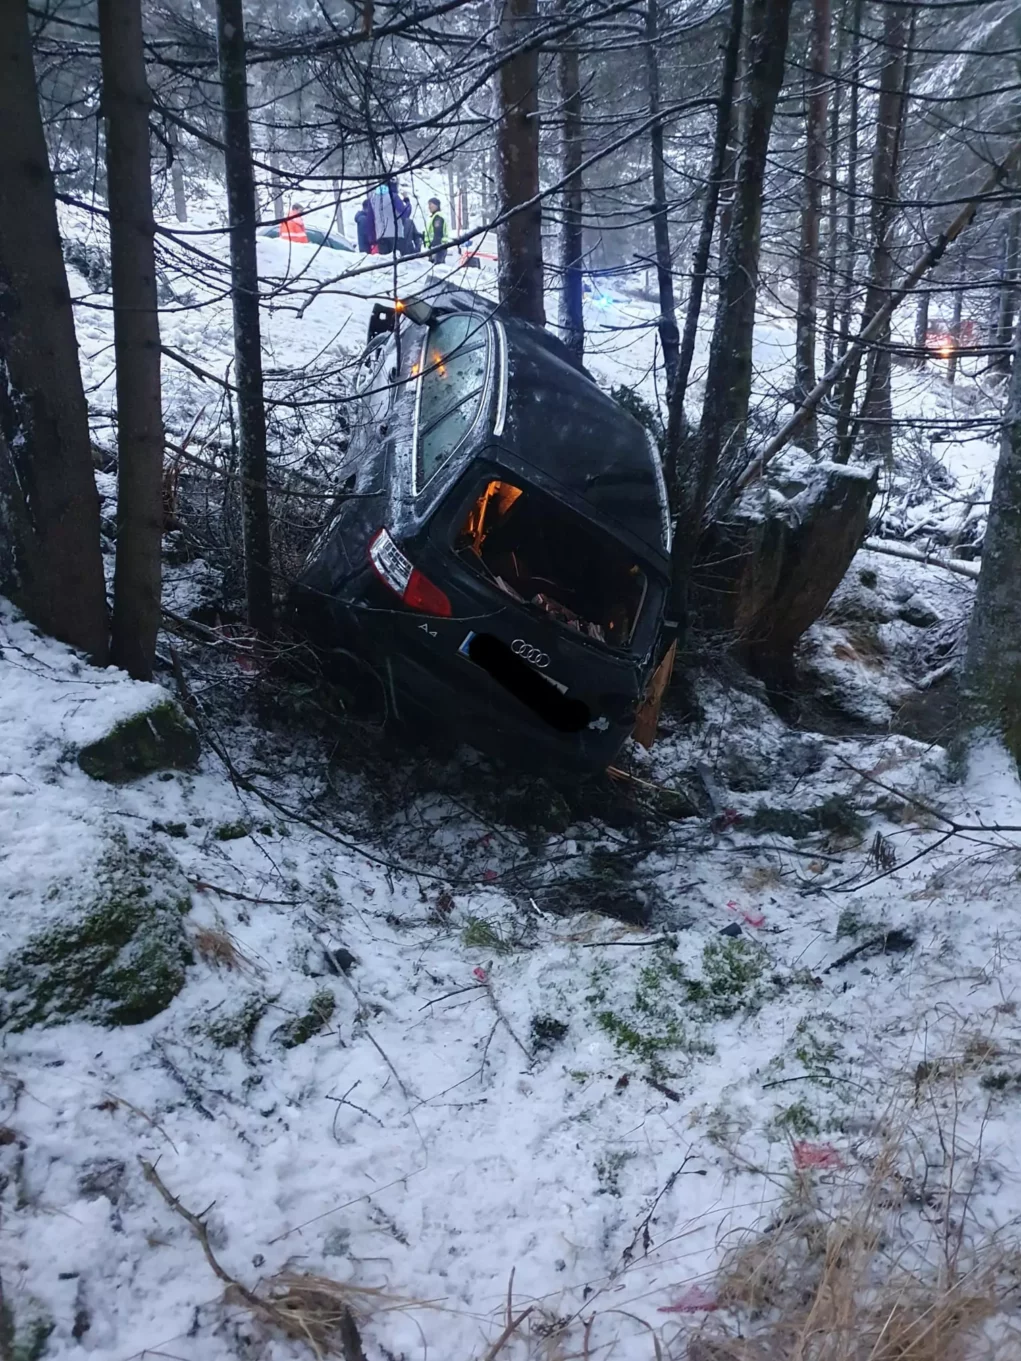 Zwei Verletzte in Villach: PKW knallte frontal gegen Schneeräumfahrzeug -  Villach